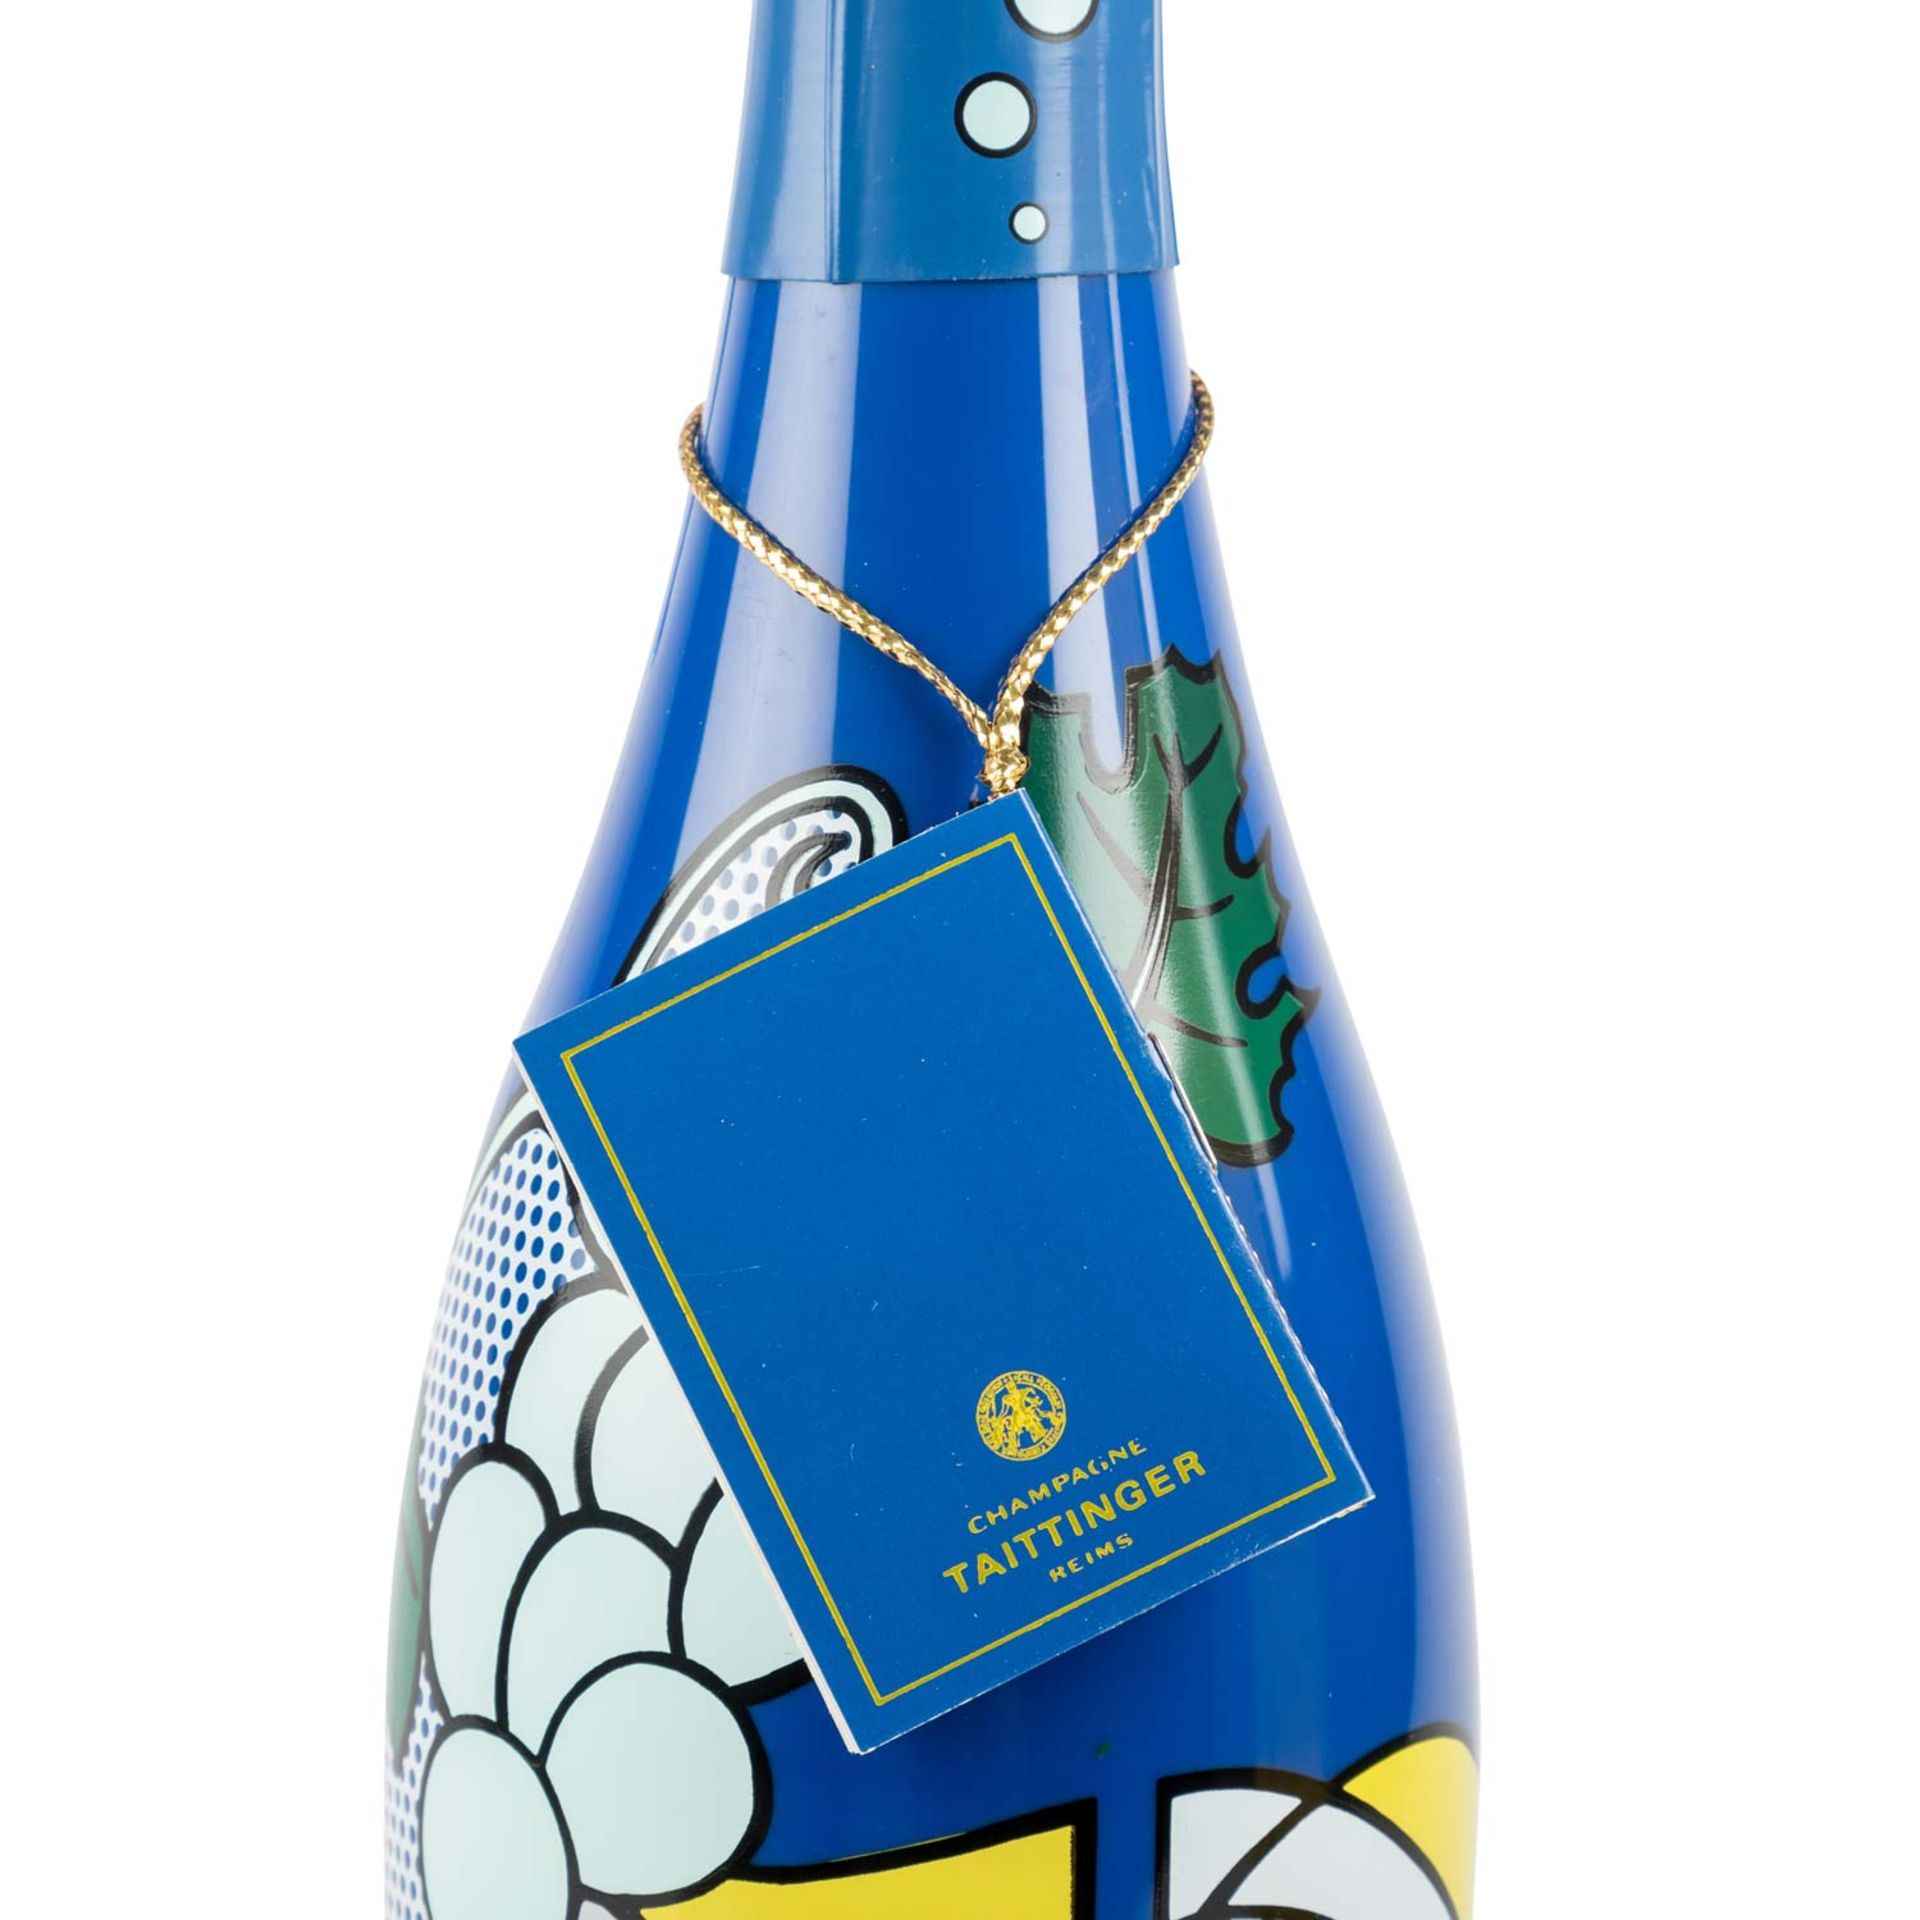 TAITTINGER Champagner 'Collection' 1 Flasche 'Roy Lichtenstein' 1985 - Bild 4 aus 7